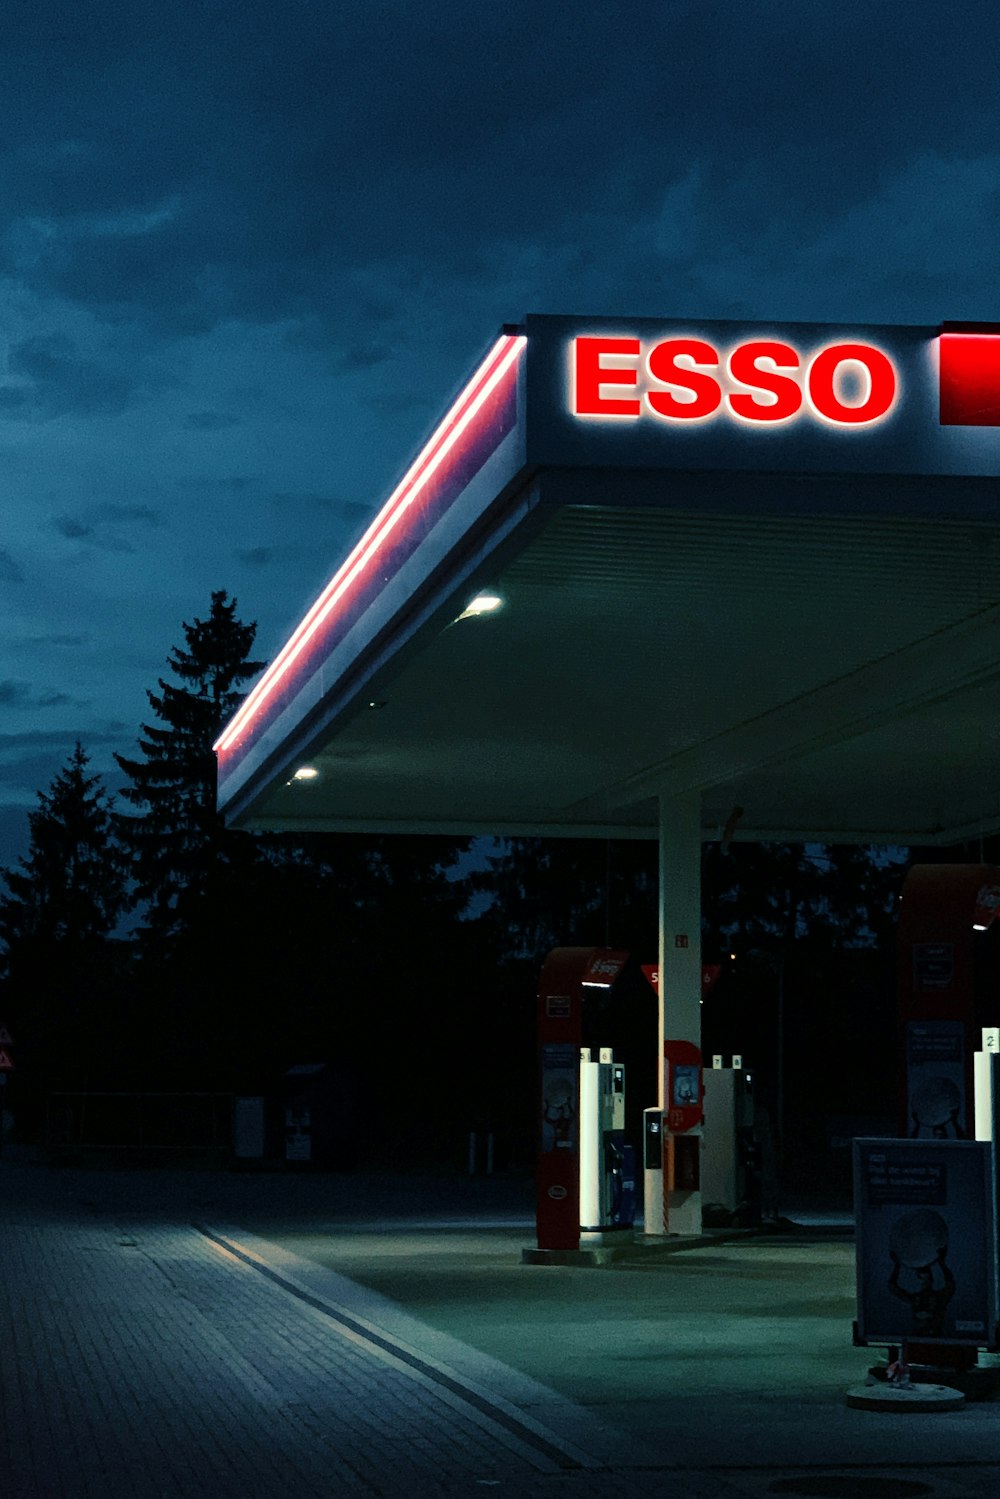 Posto de gasolina Esso durante a noite